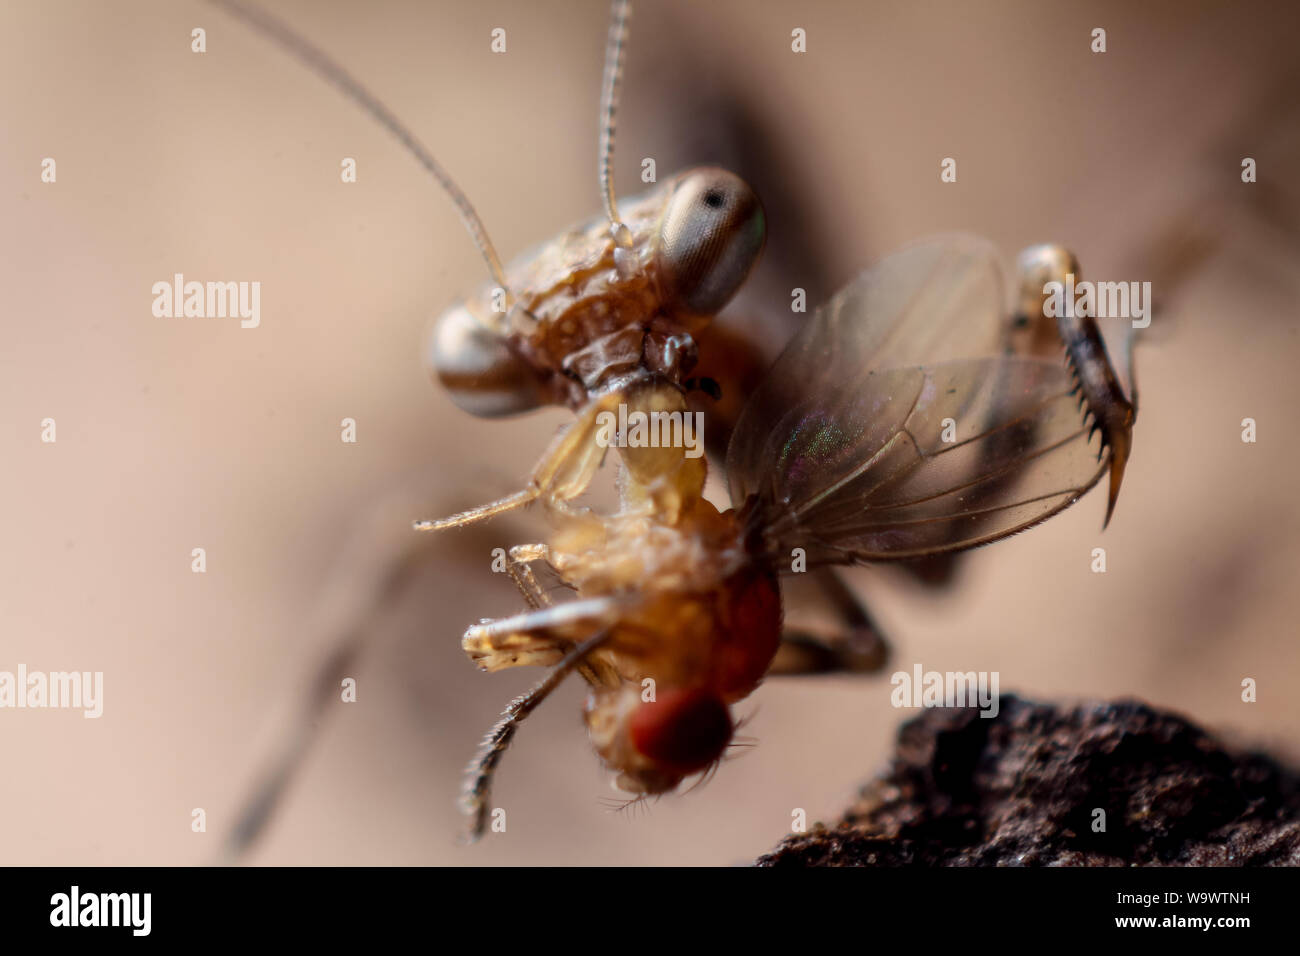 Close-up d'une petite mante religieuse qui se nourrit d'une mouche à fruits, montre les insectes dans des détails Banque D'Images